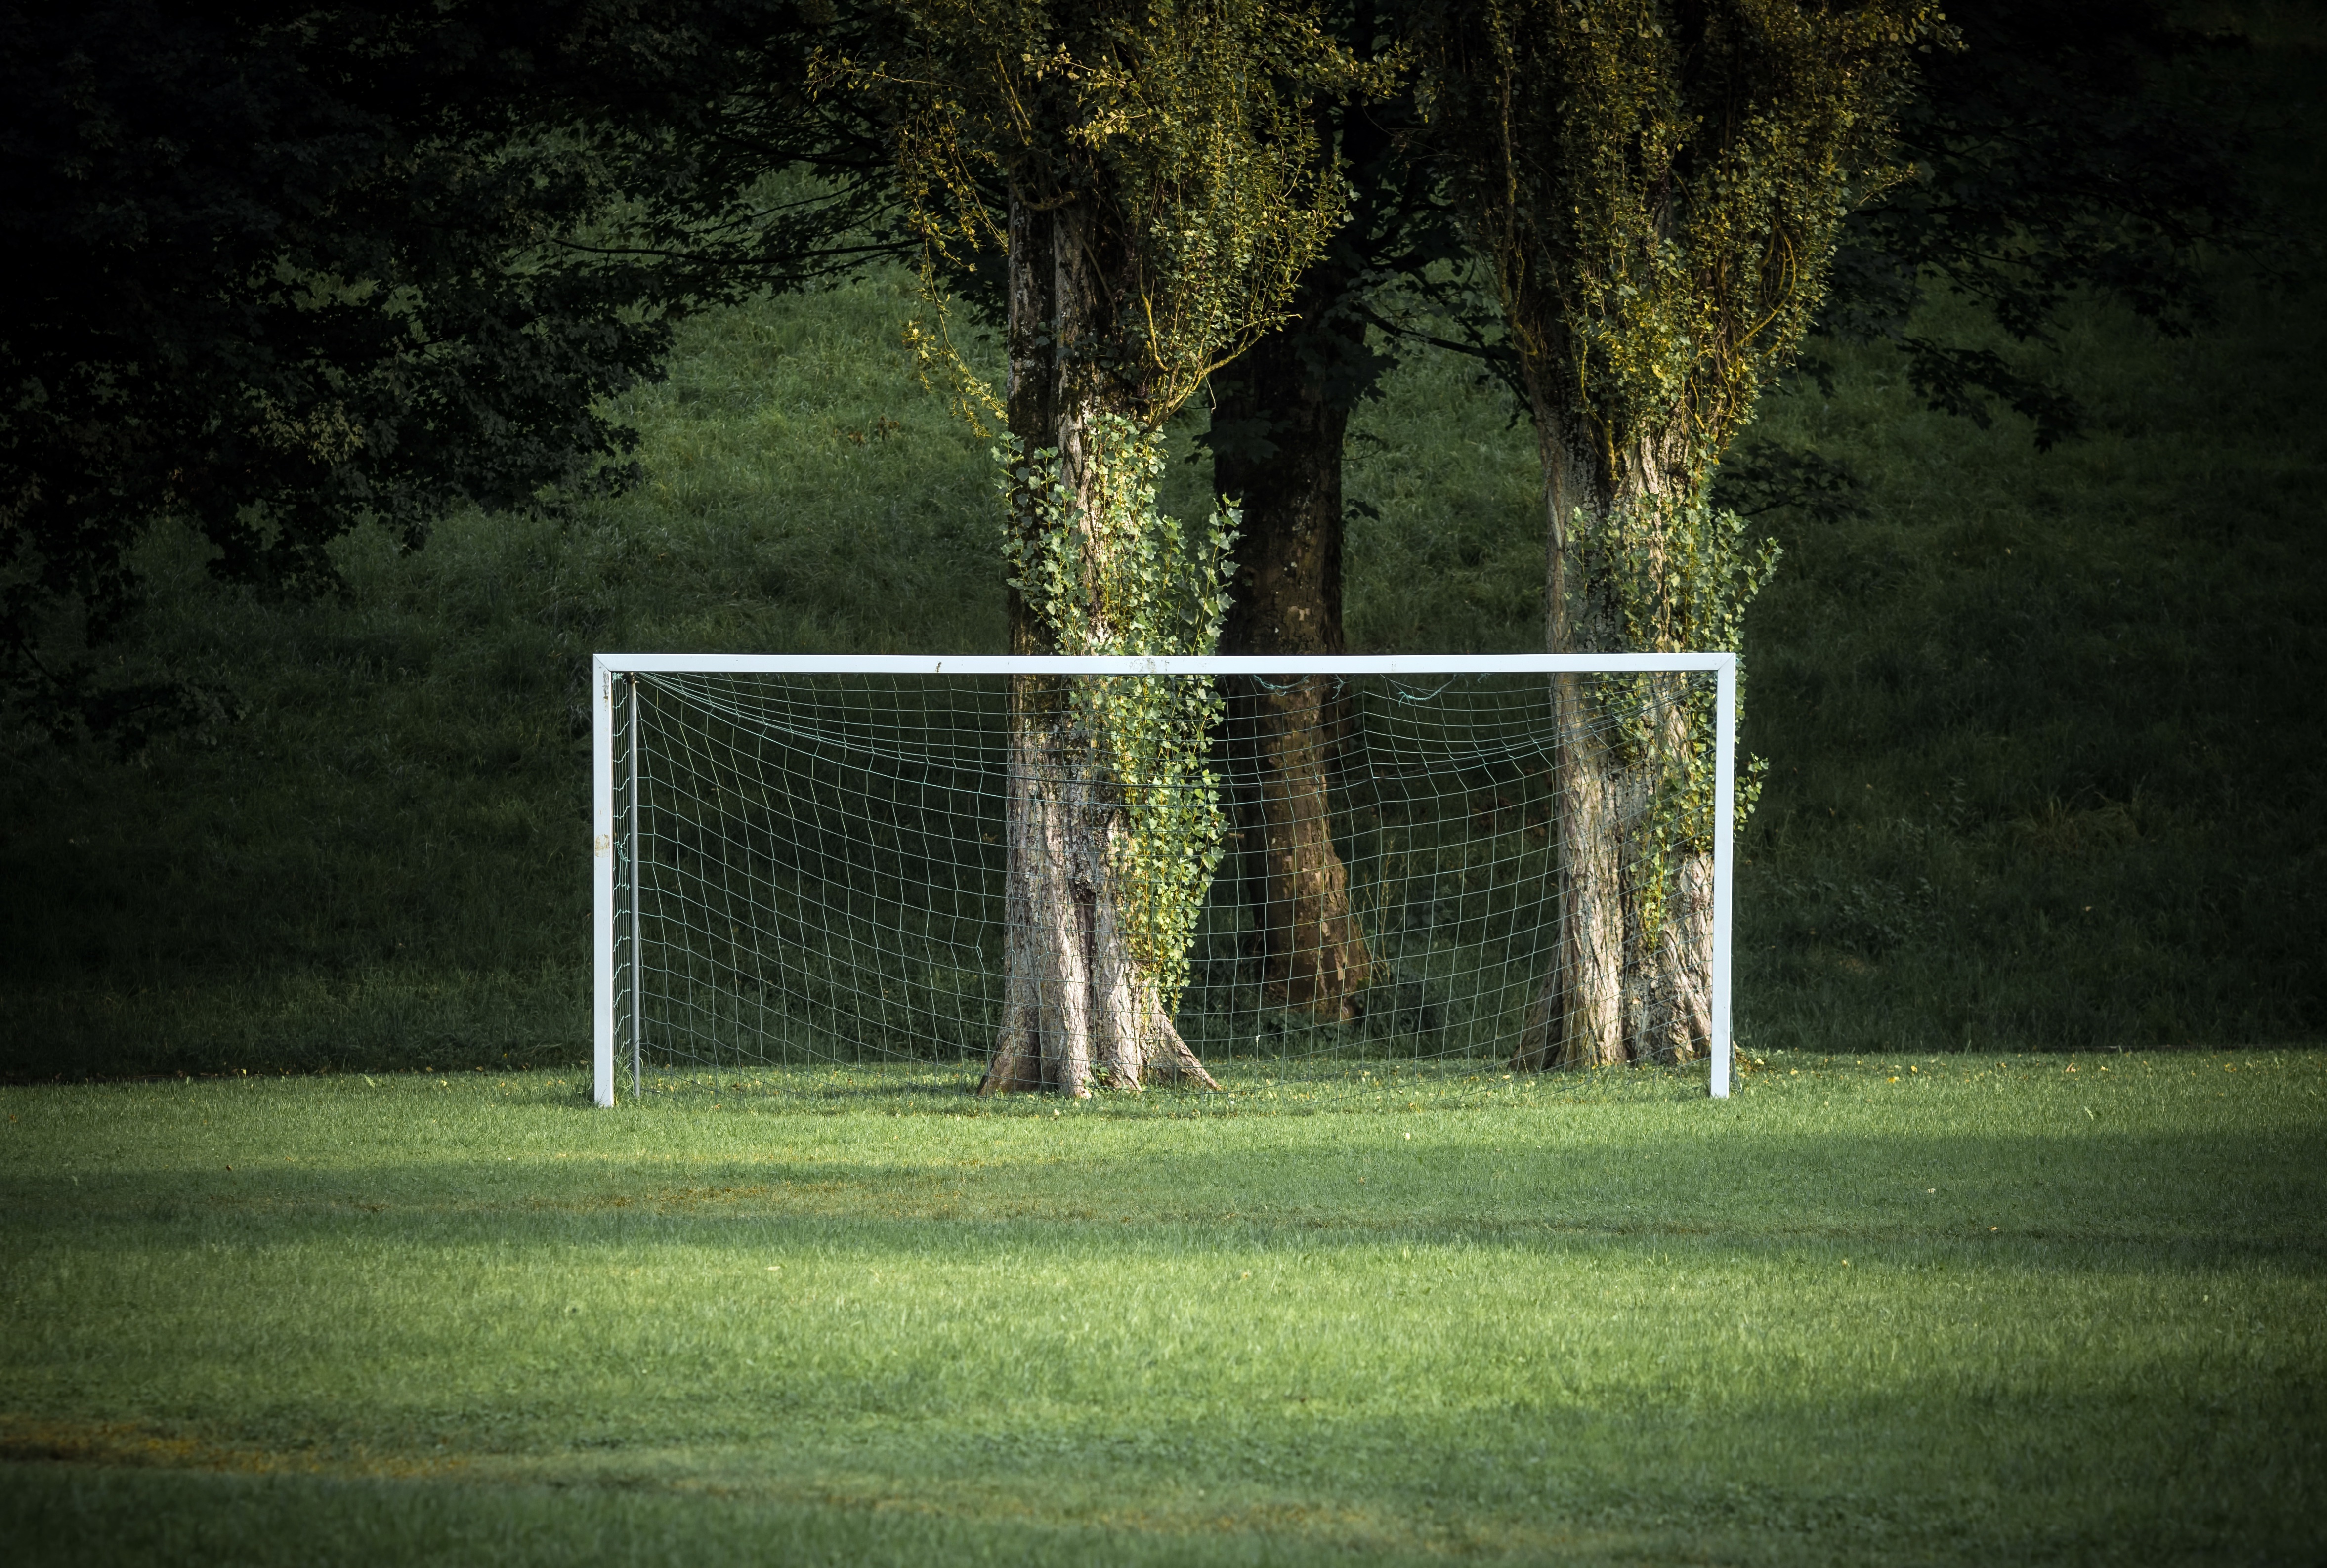 General 4709x3173 grass green trees sport soccer field Goal